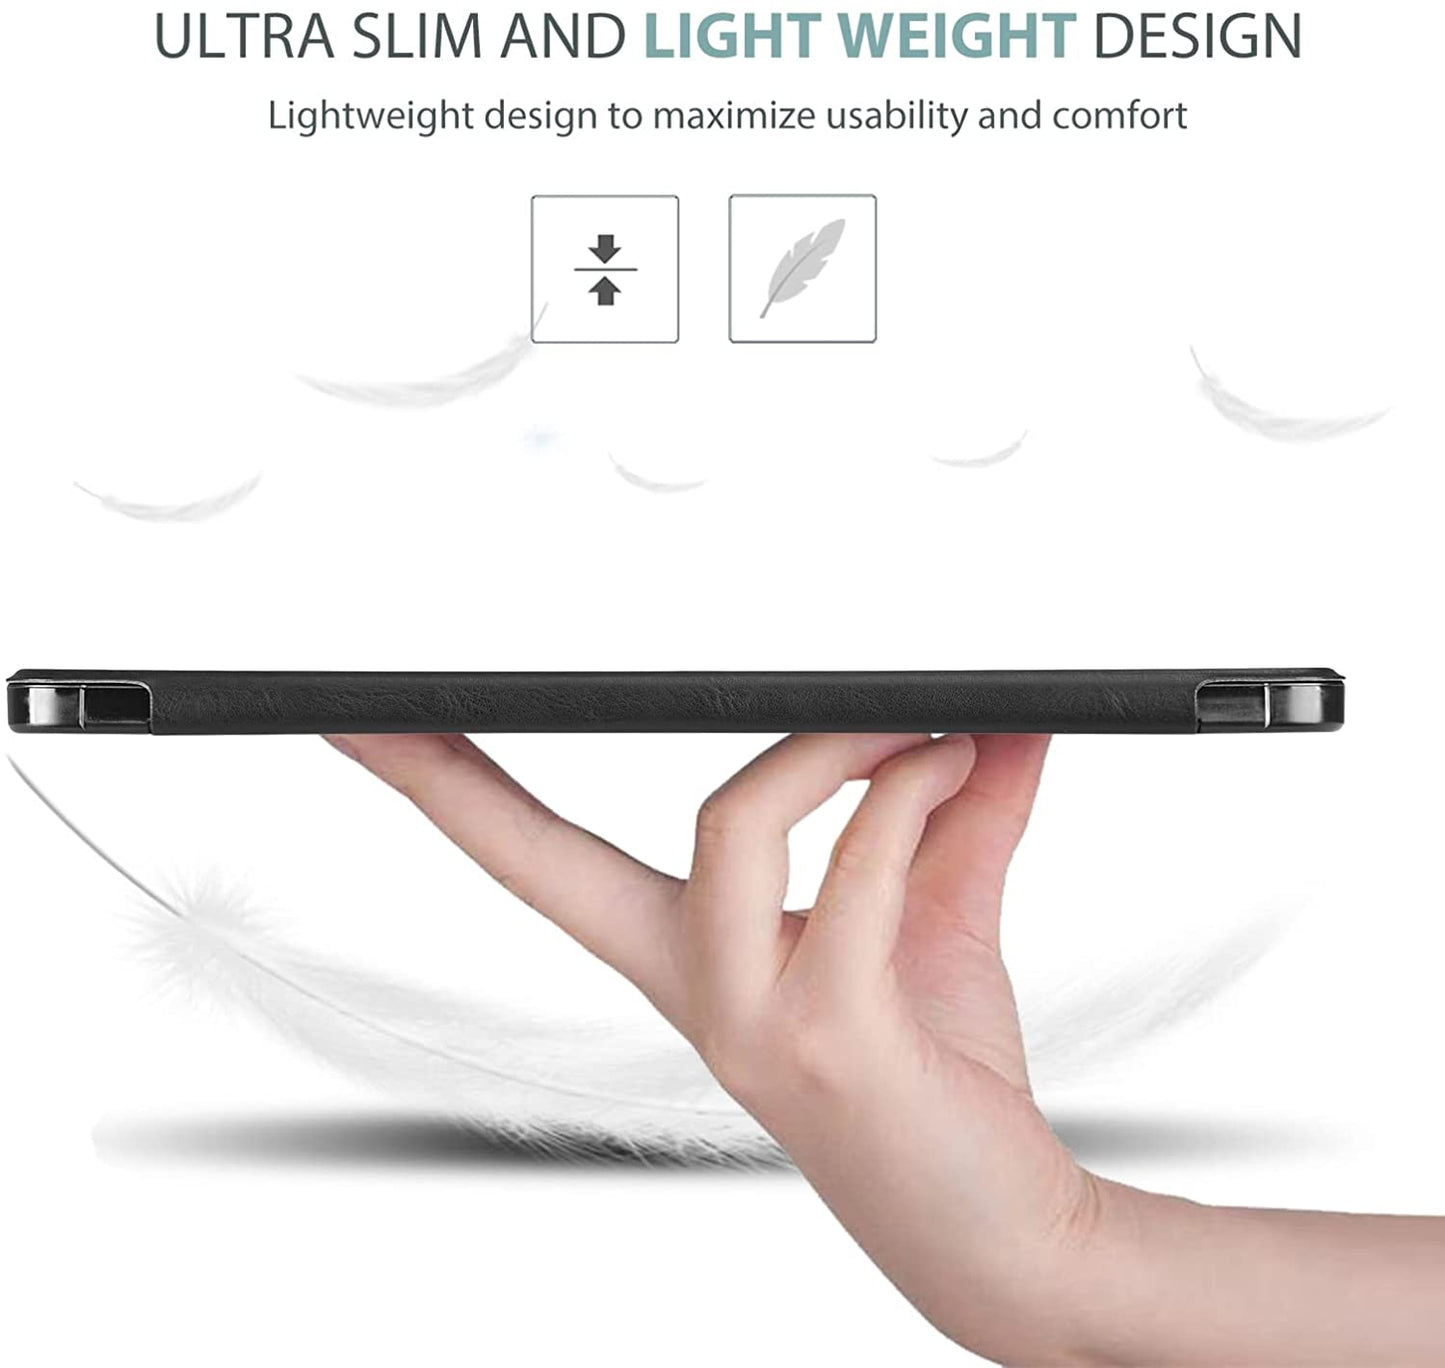 Galaxy Tab S7 2020 / Tab S8 2022 11 Tri-fold Slim Stand Folio Case | Yapears